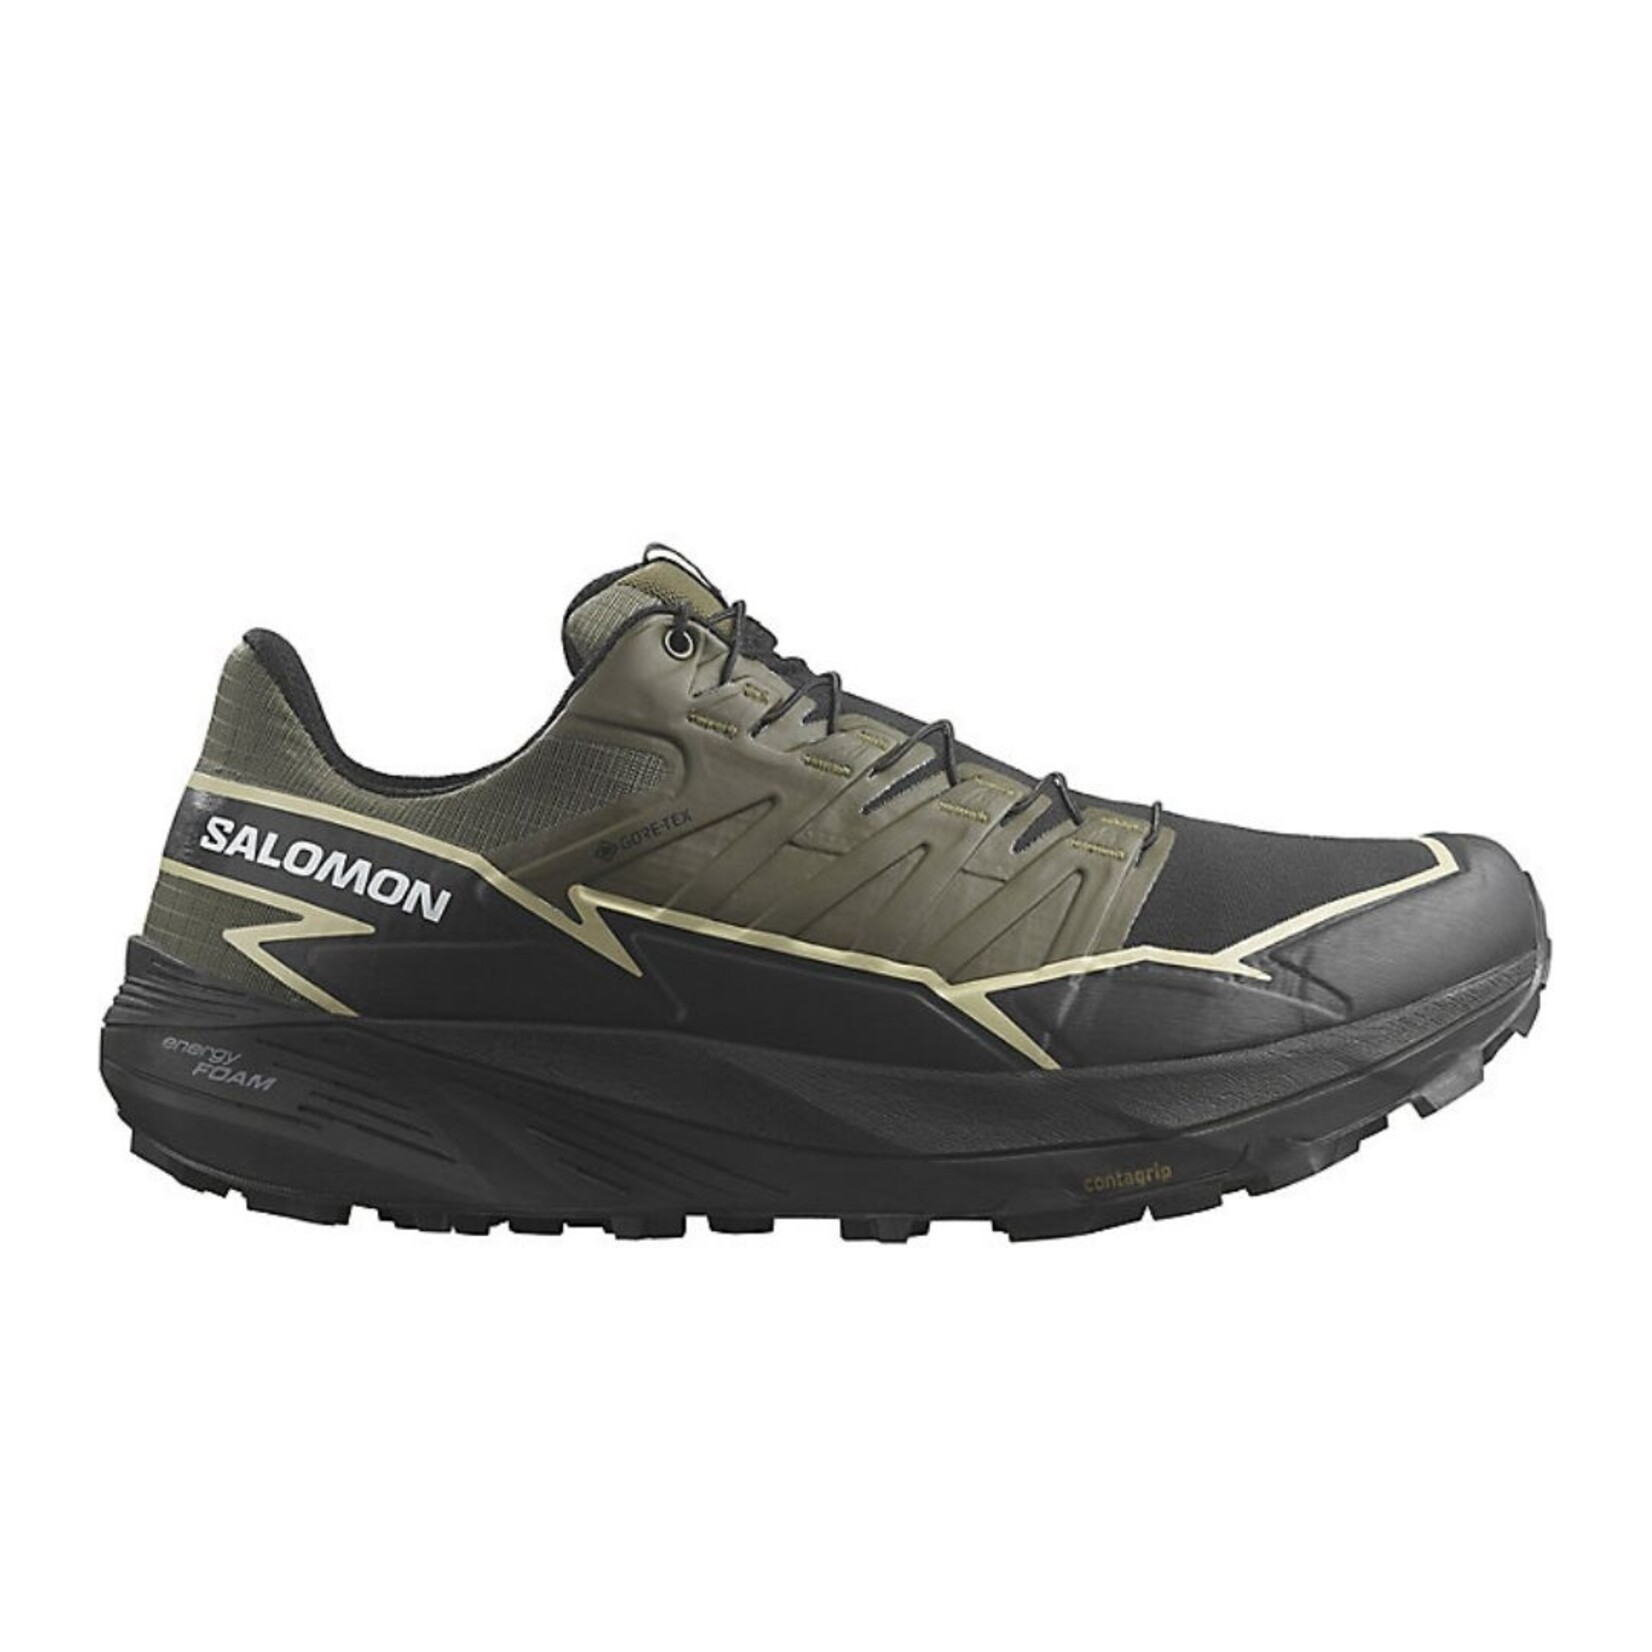 Salomon Salomon Thundercross GTX Men's Trail Running Shoes